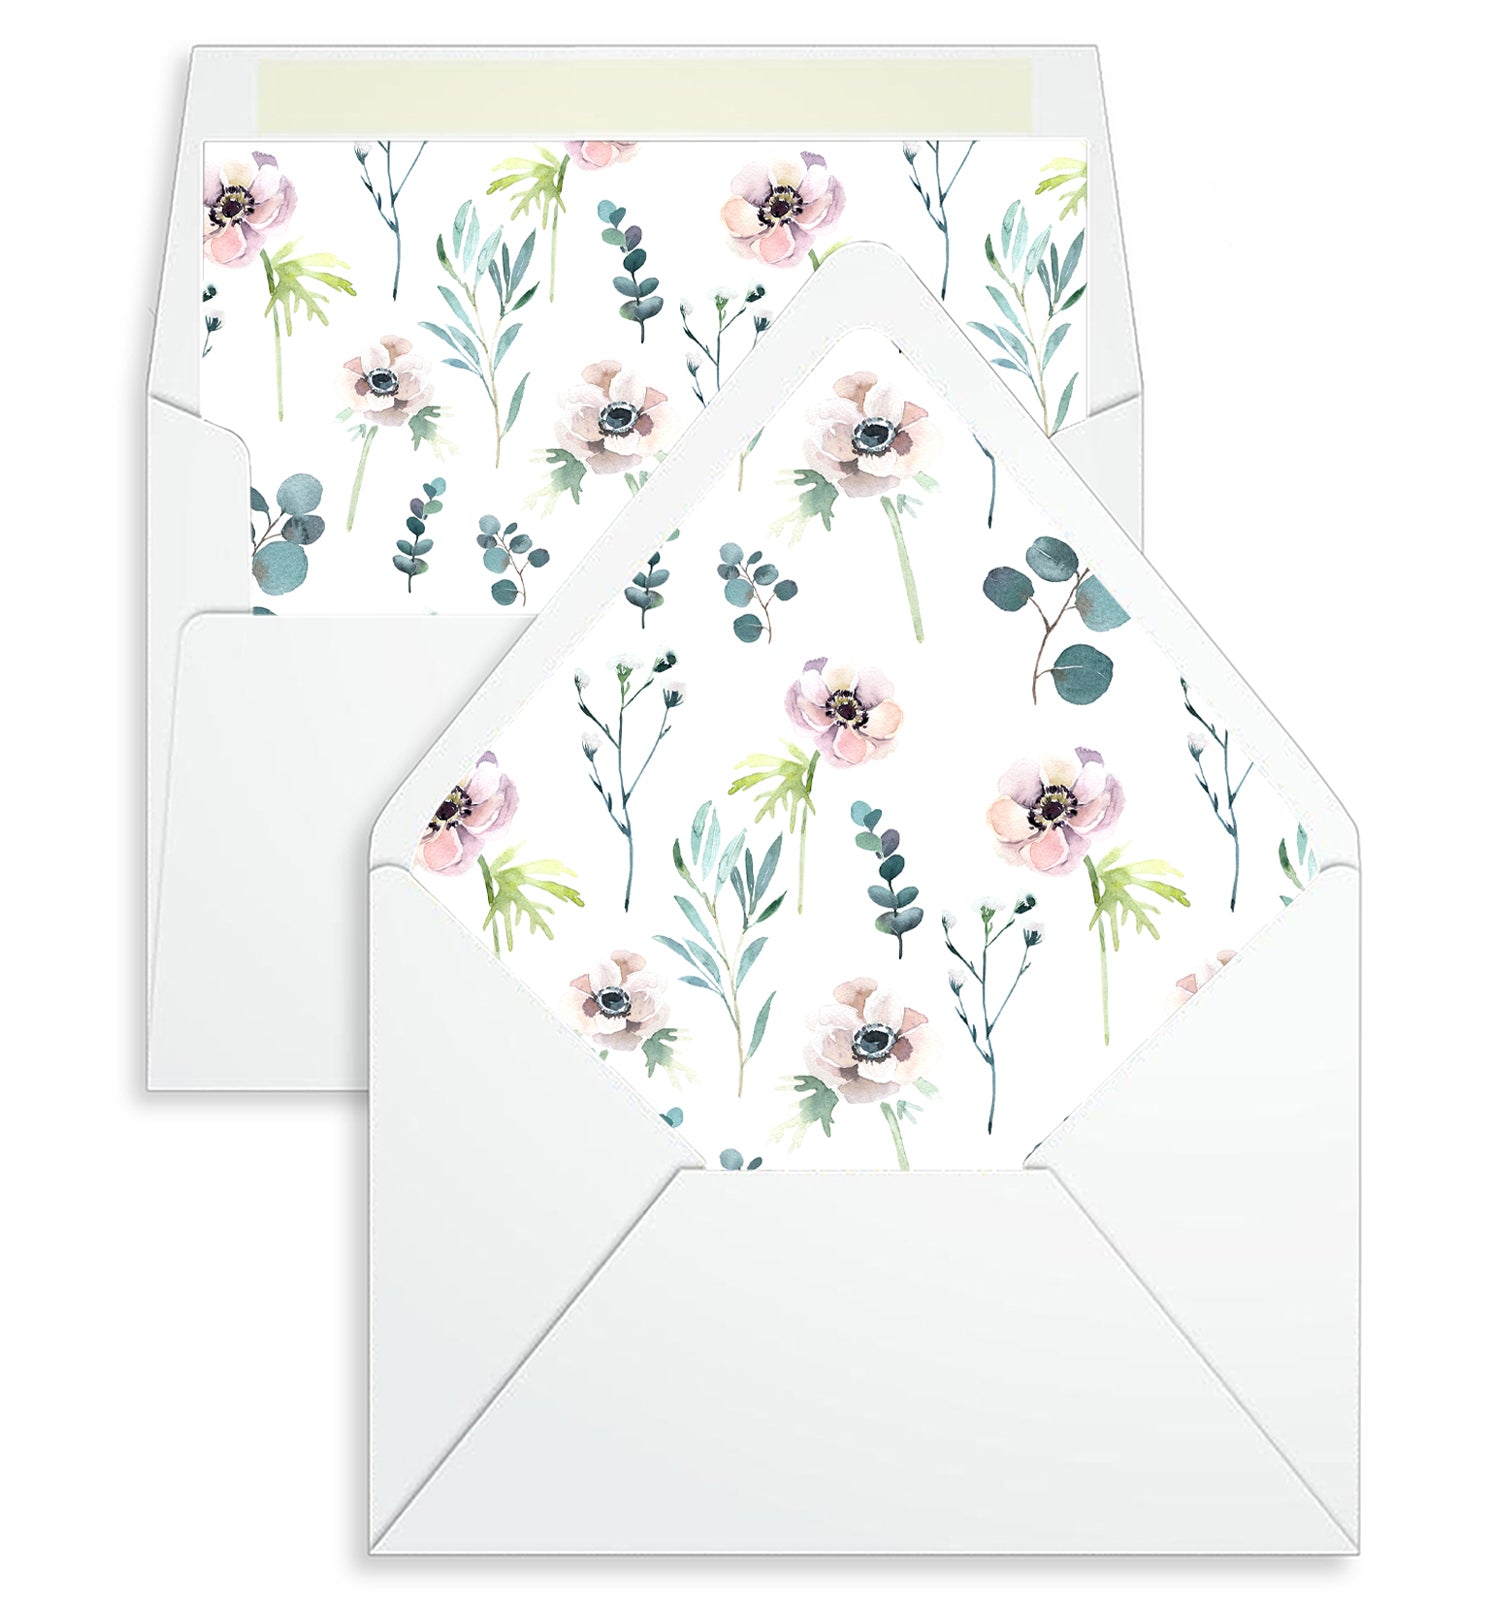 Envelope Liner - 10 Envelope Sizes, Wild Flowers and Green Leaves Design - EL12